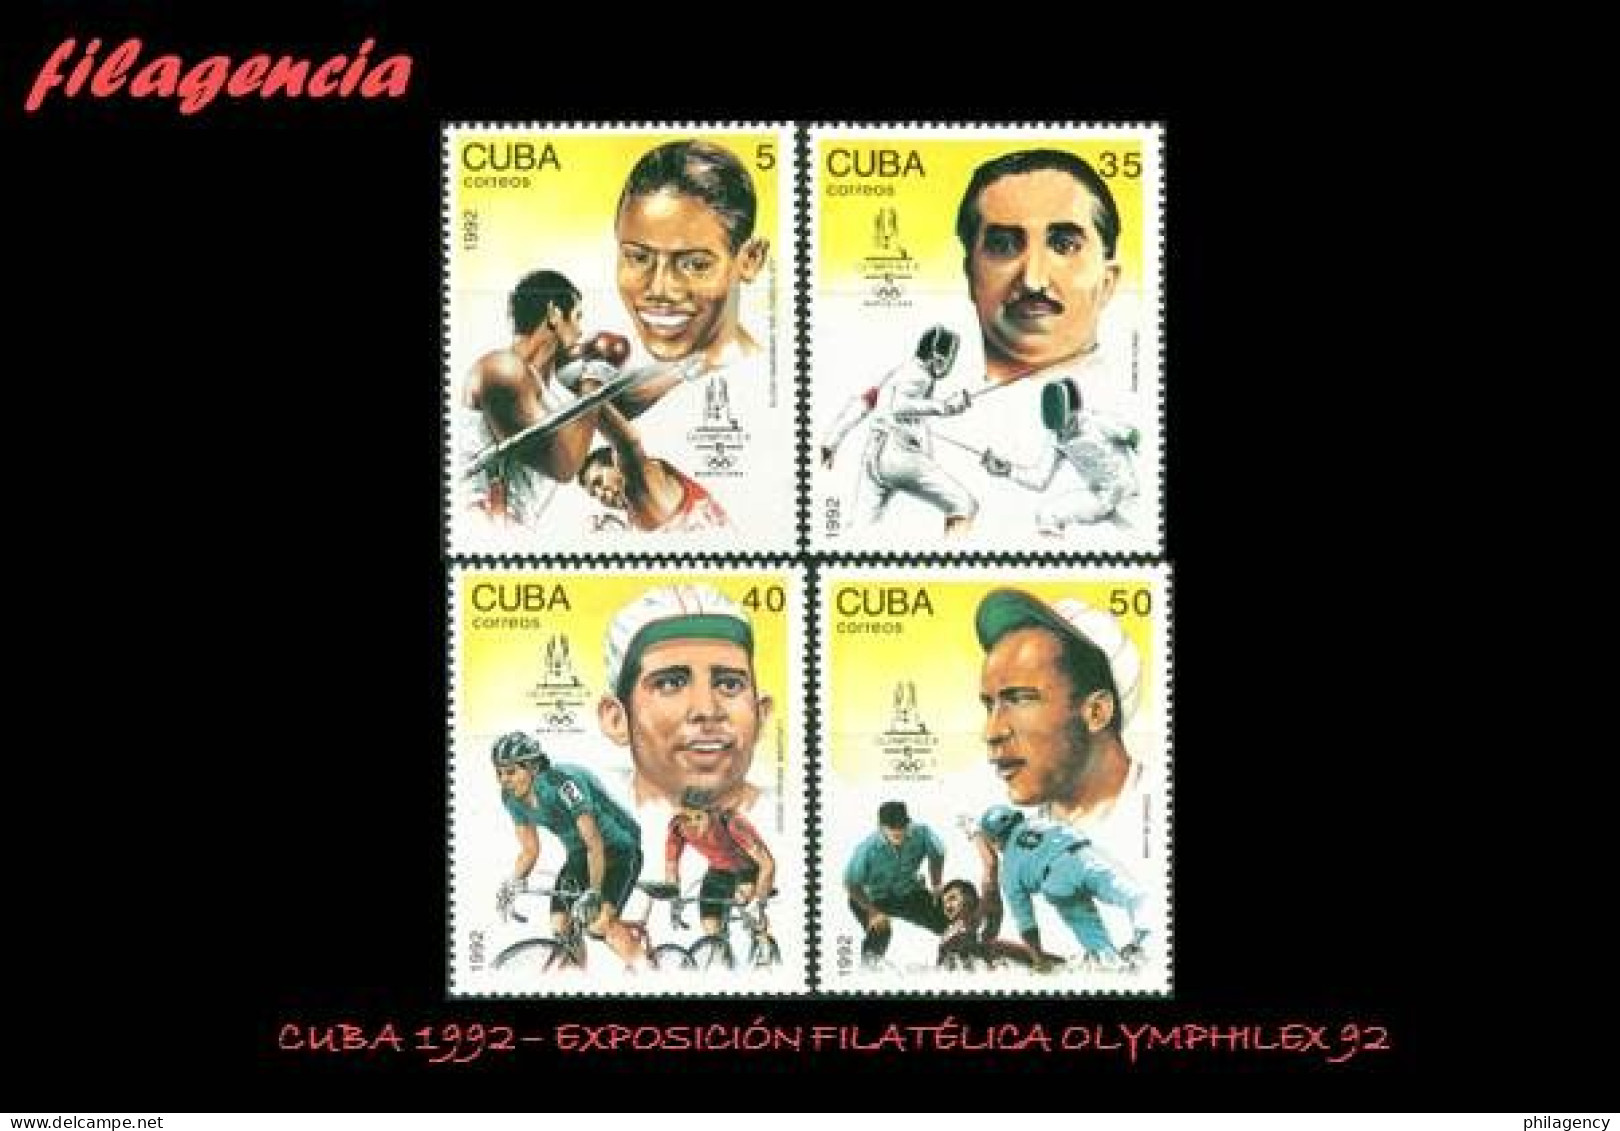 CUBA MINT. 1992-14 EXPOSICIÓN FILATÉLICA OLYMPHILEX 92. FIGURAS DEL DEPORTE CUBANO - Unused Stamps